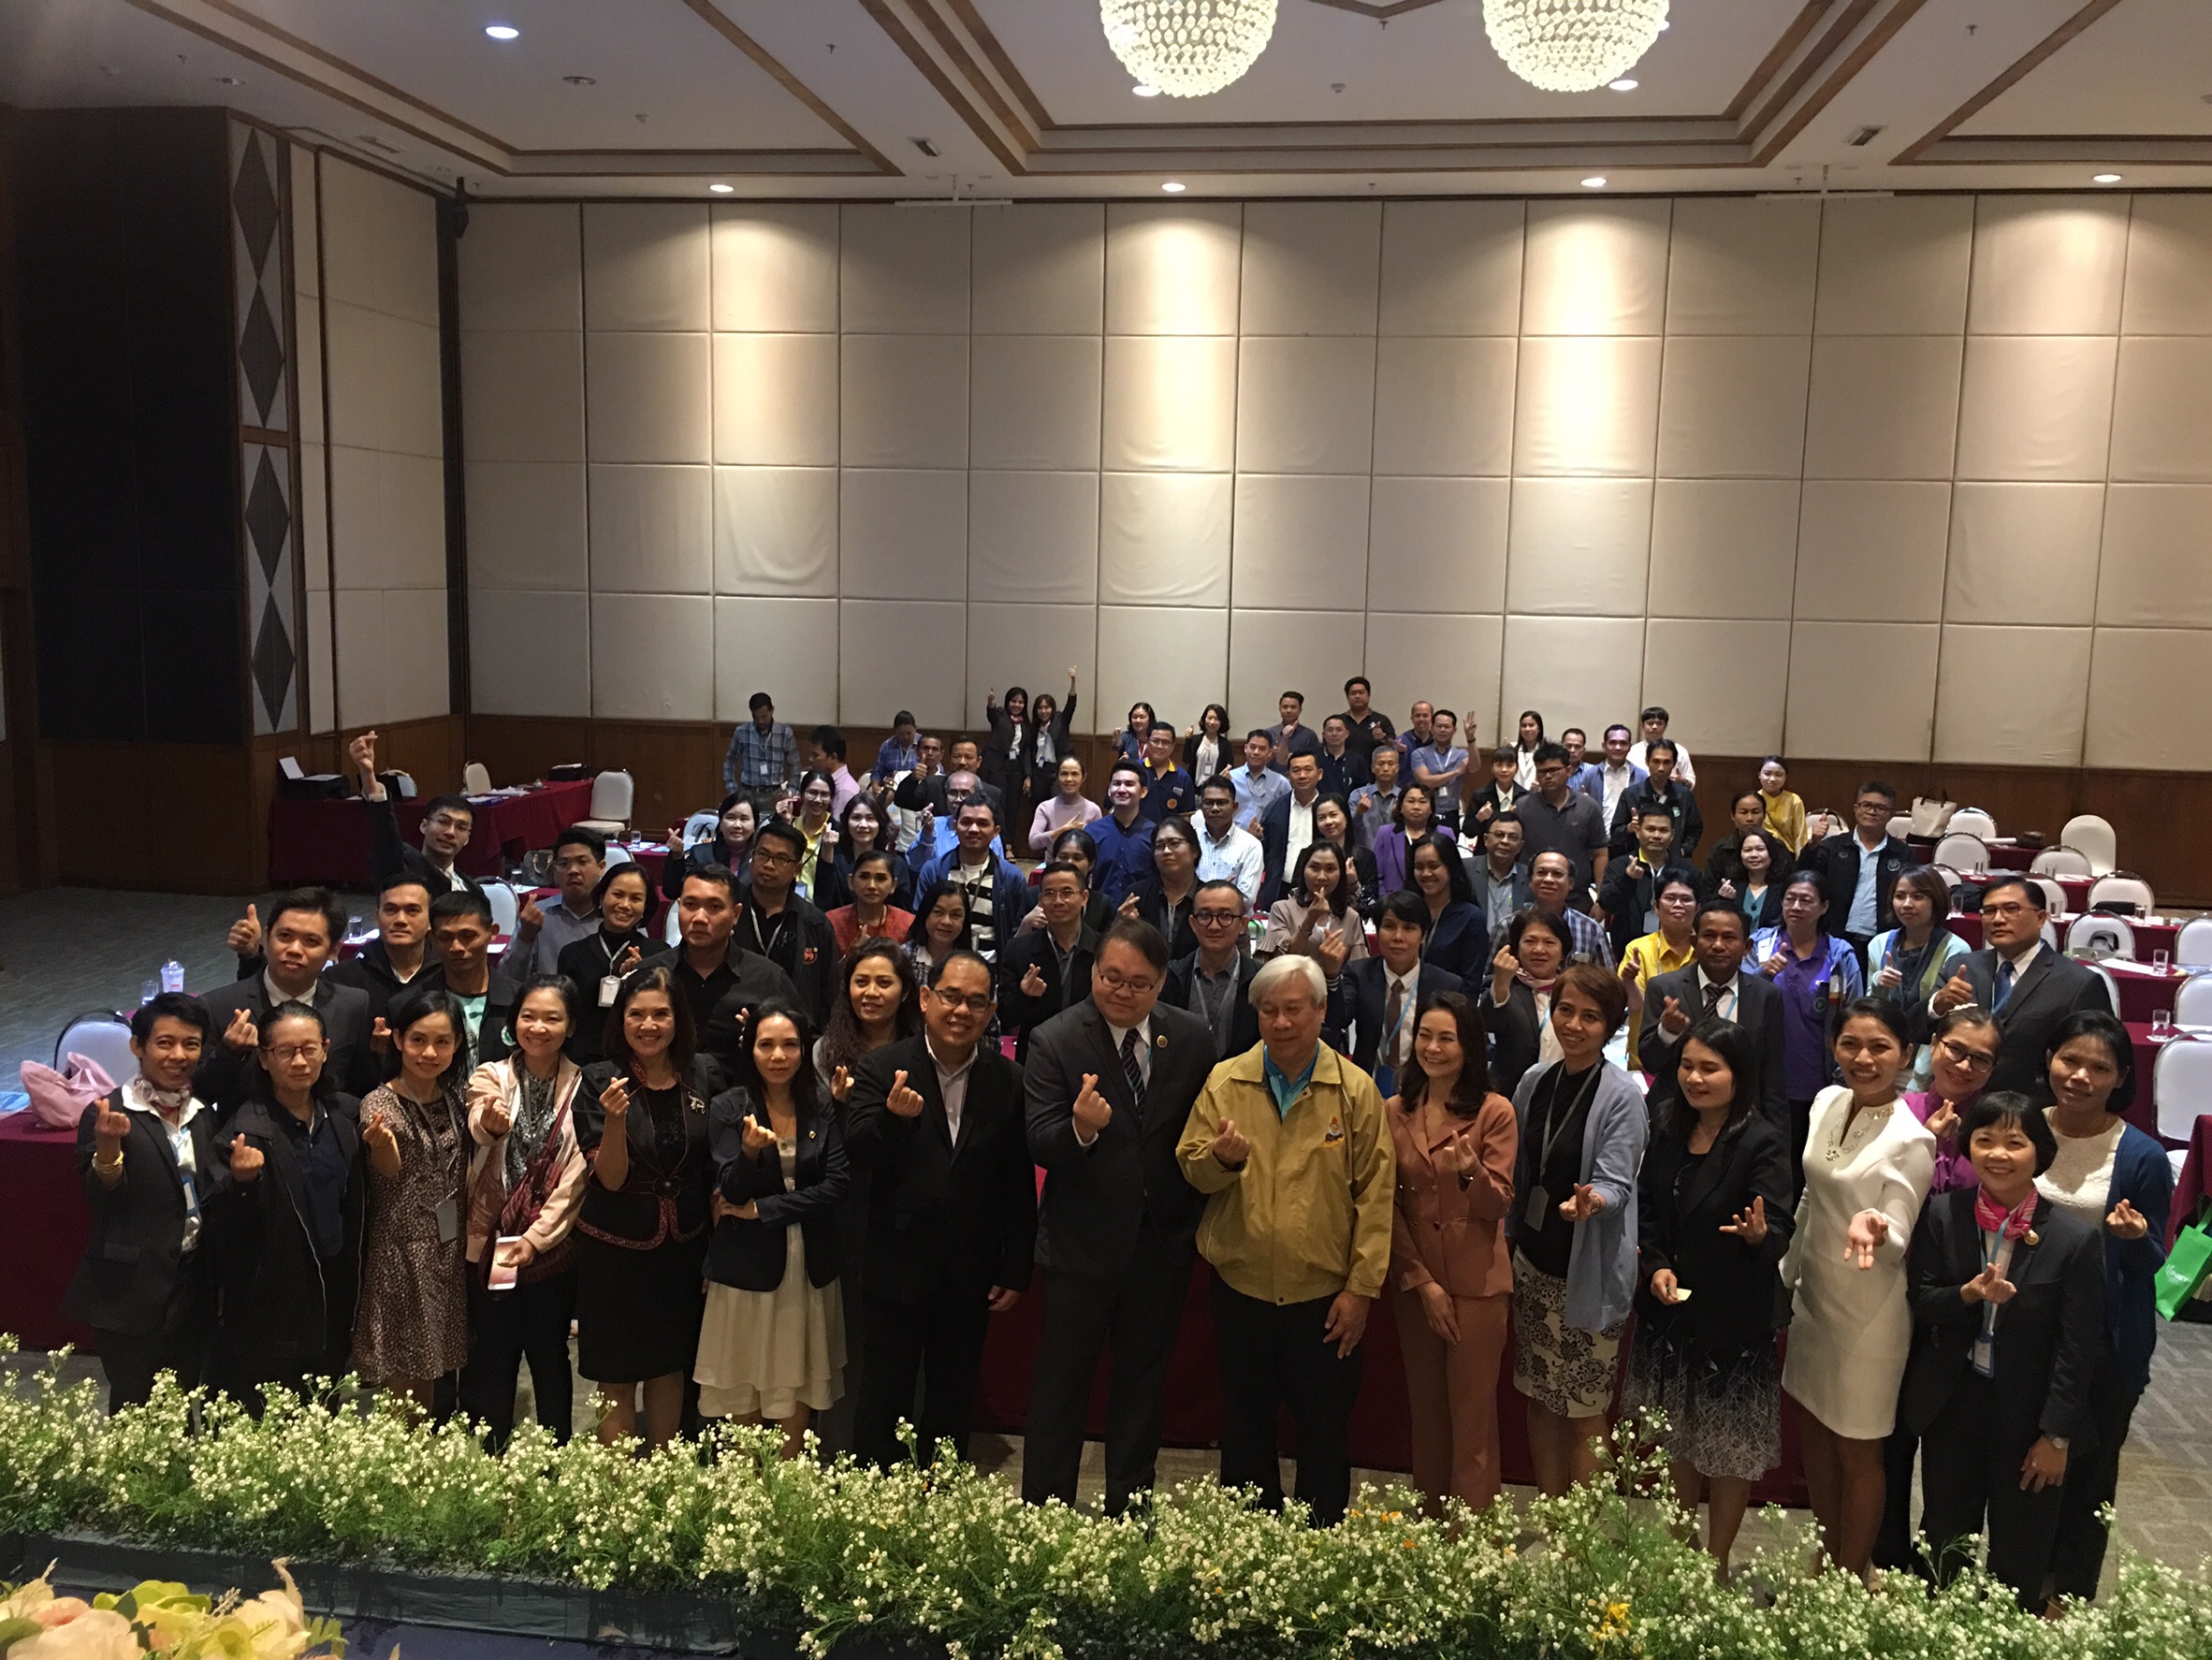 ประชุมวิชาการร่วมกับรังสีการแพทย์แห่งประเทศไทย ครั้งที่17 27-29 พ.ย. - พร้อมเข้าเยี่ยมและให้กำลังใจหน่วยงานรังสีวิทยาในพื้นที่จังหวัดอุบลราชธานีระหว่างวันที่ 25-26 พฤศจิกายน 2562 24